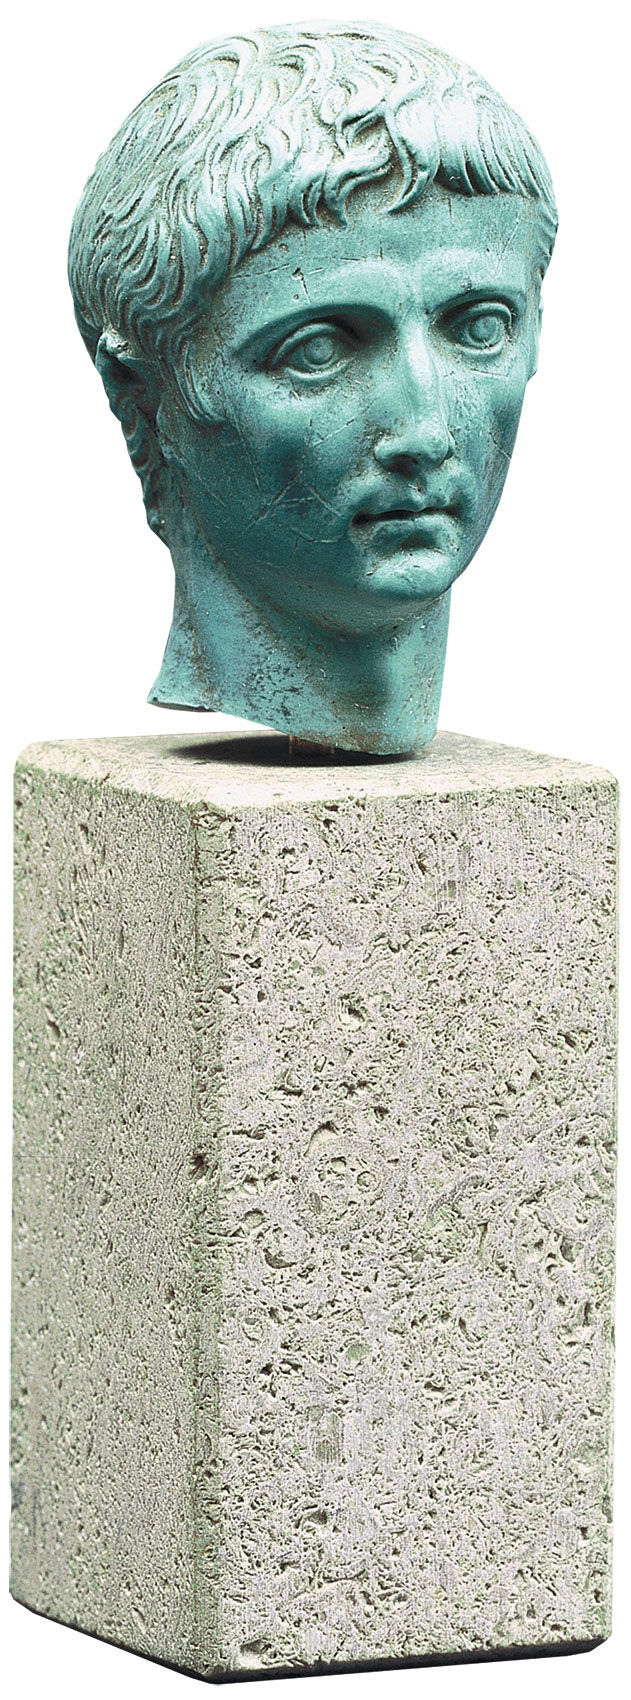 Porträtkopf "Augustus", Kunstguss